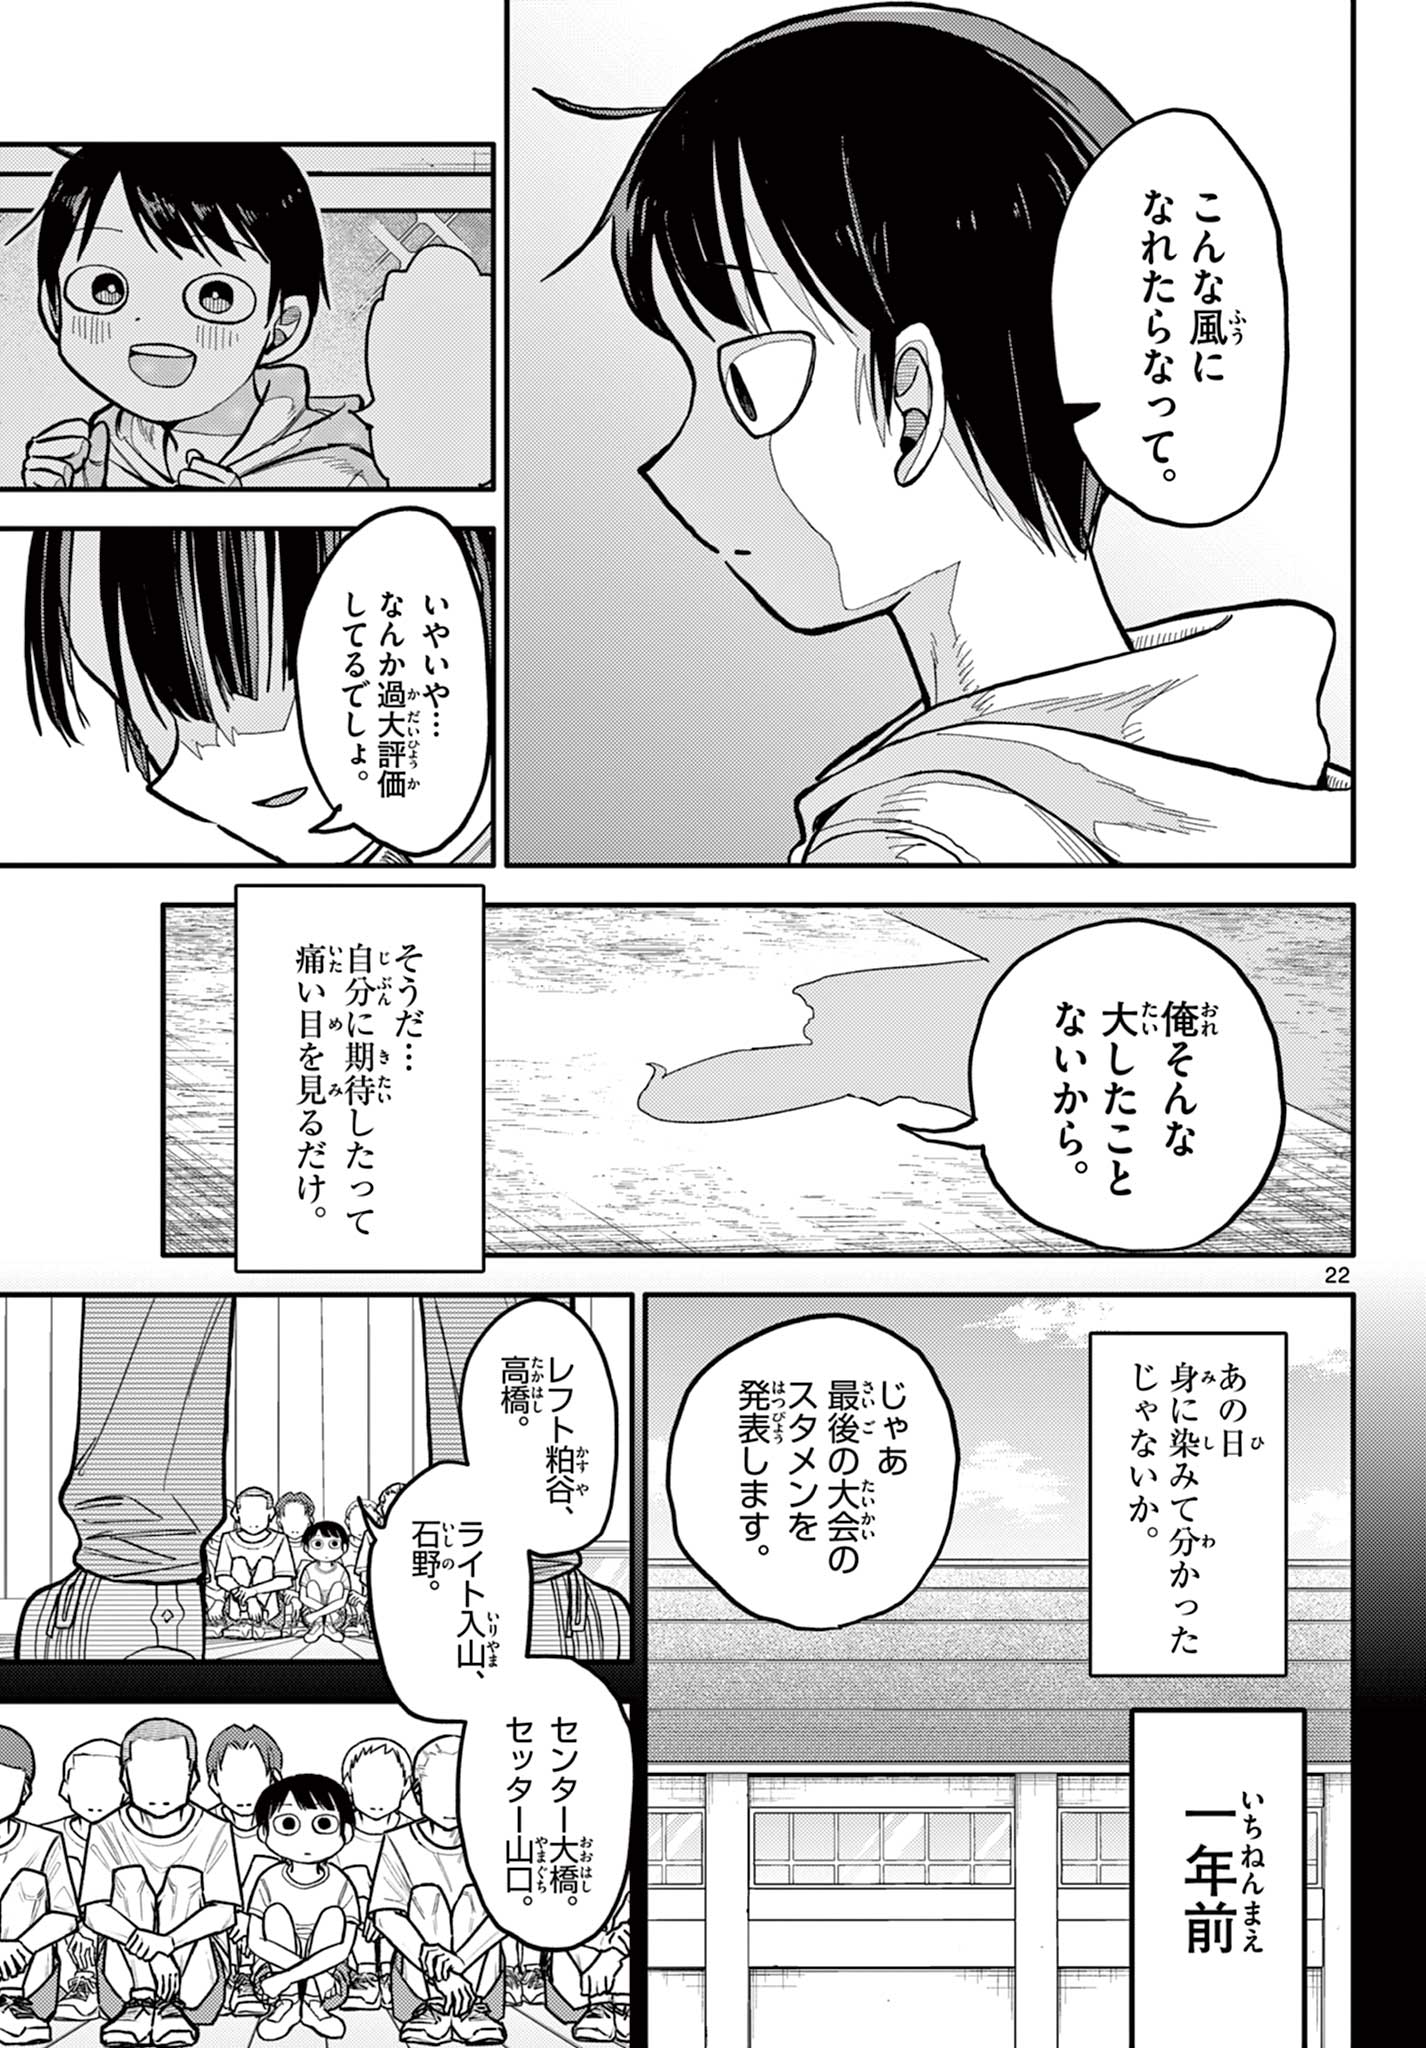 Chiisai Boku no Haru - Chapter 1.1 - Page 23